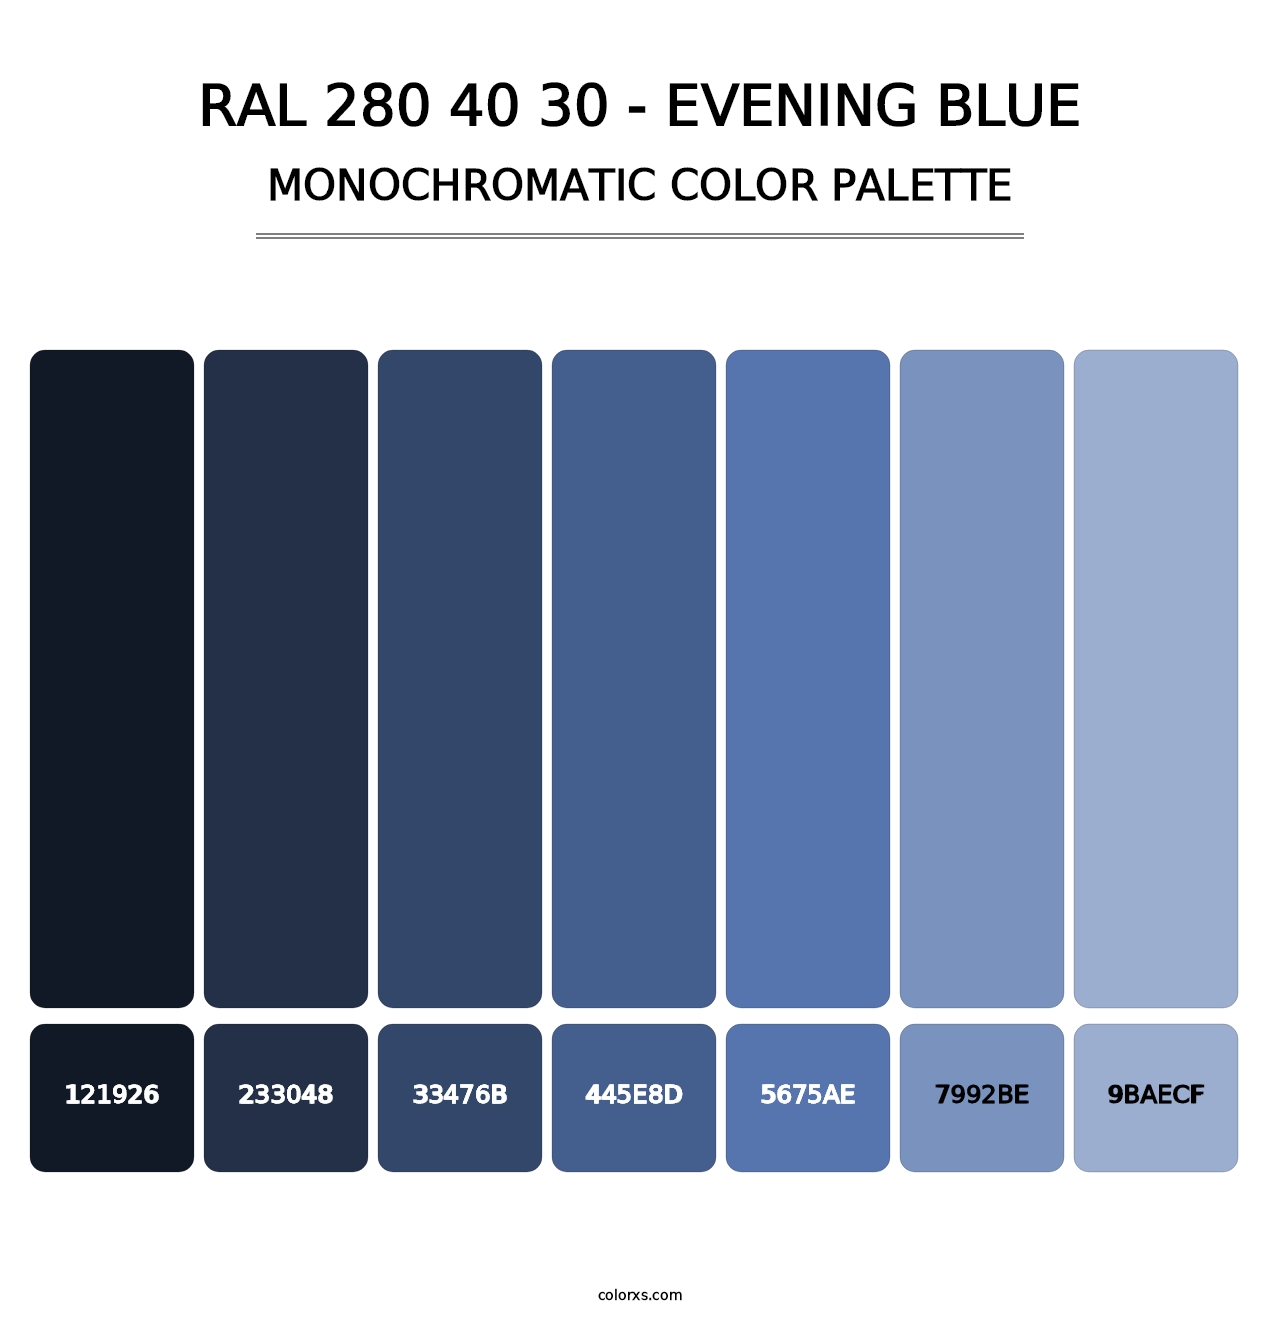 RAL 280 40 30 - Evening Blue - Monochromatic Color Palette